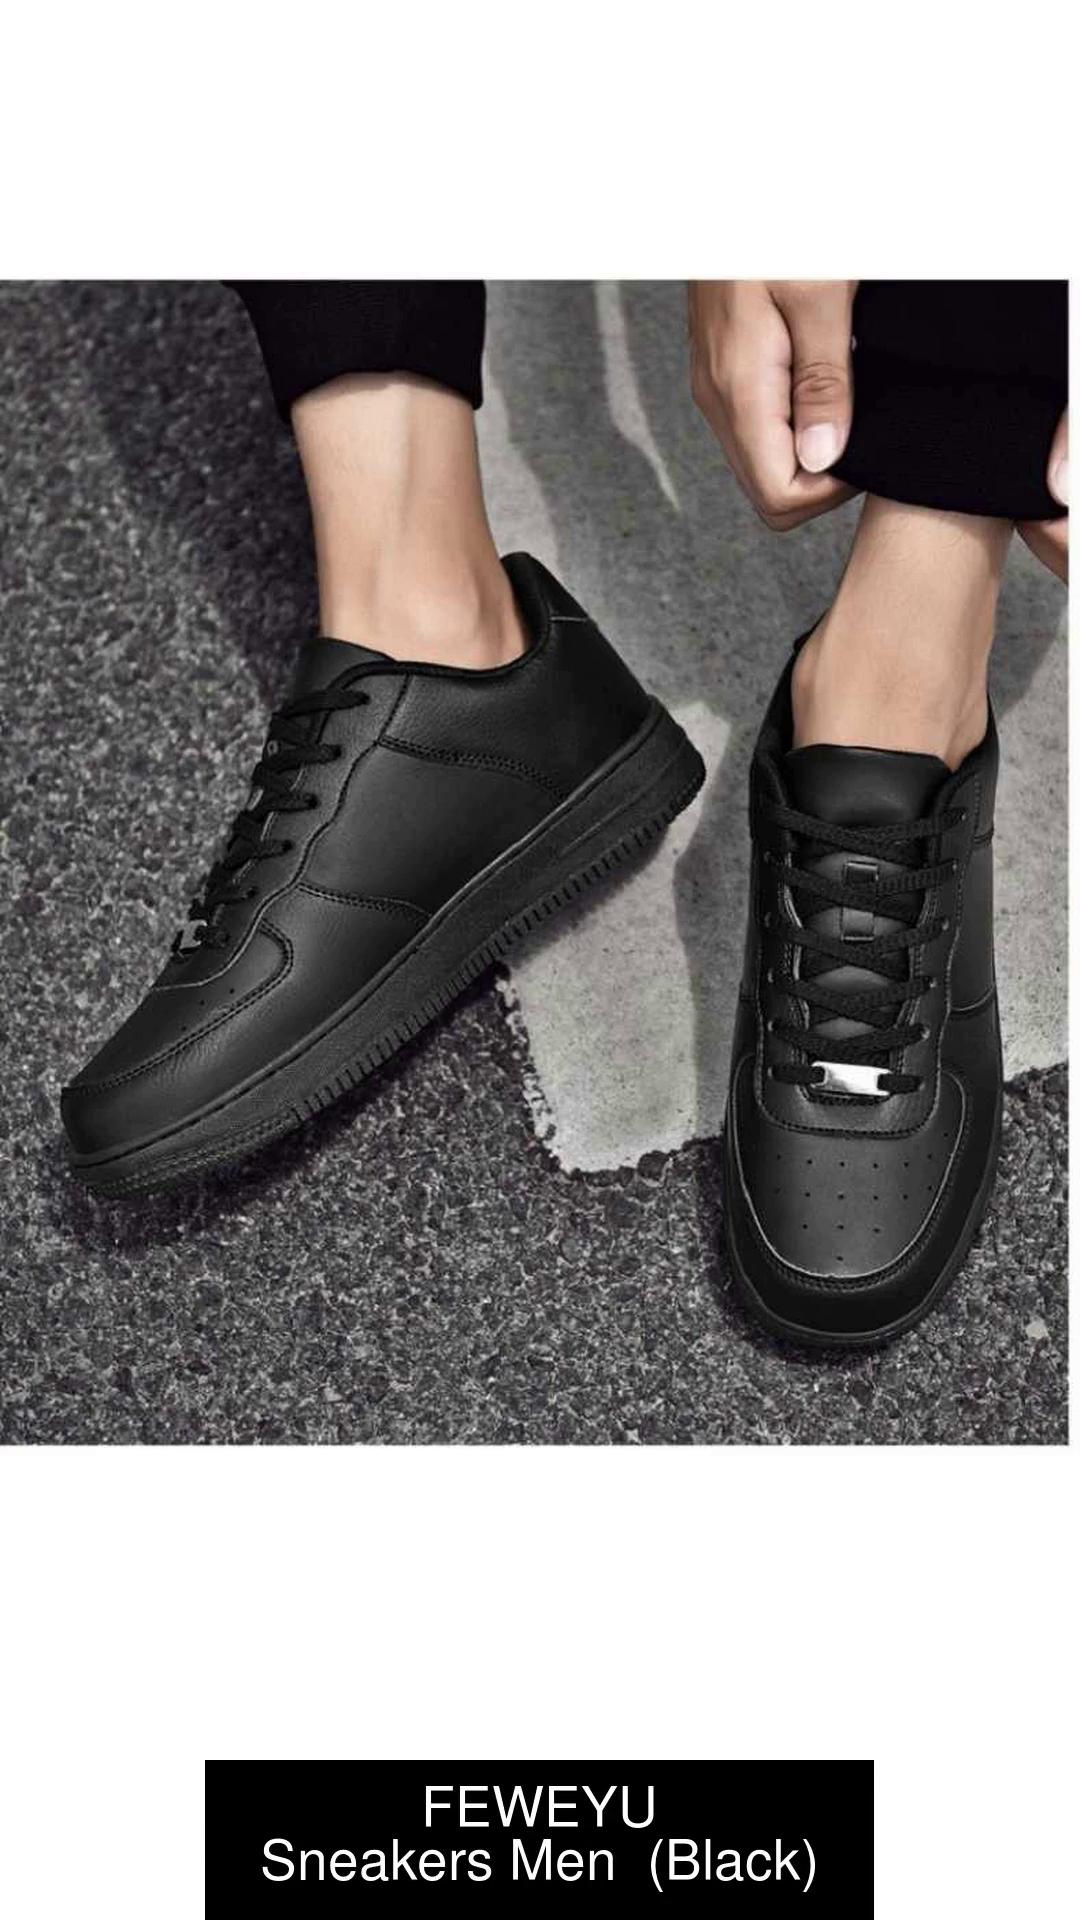 FEWEYU Fashionable casual sneaker shoes Sneakers For Men (Black